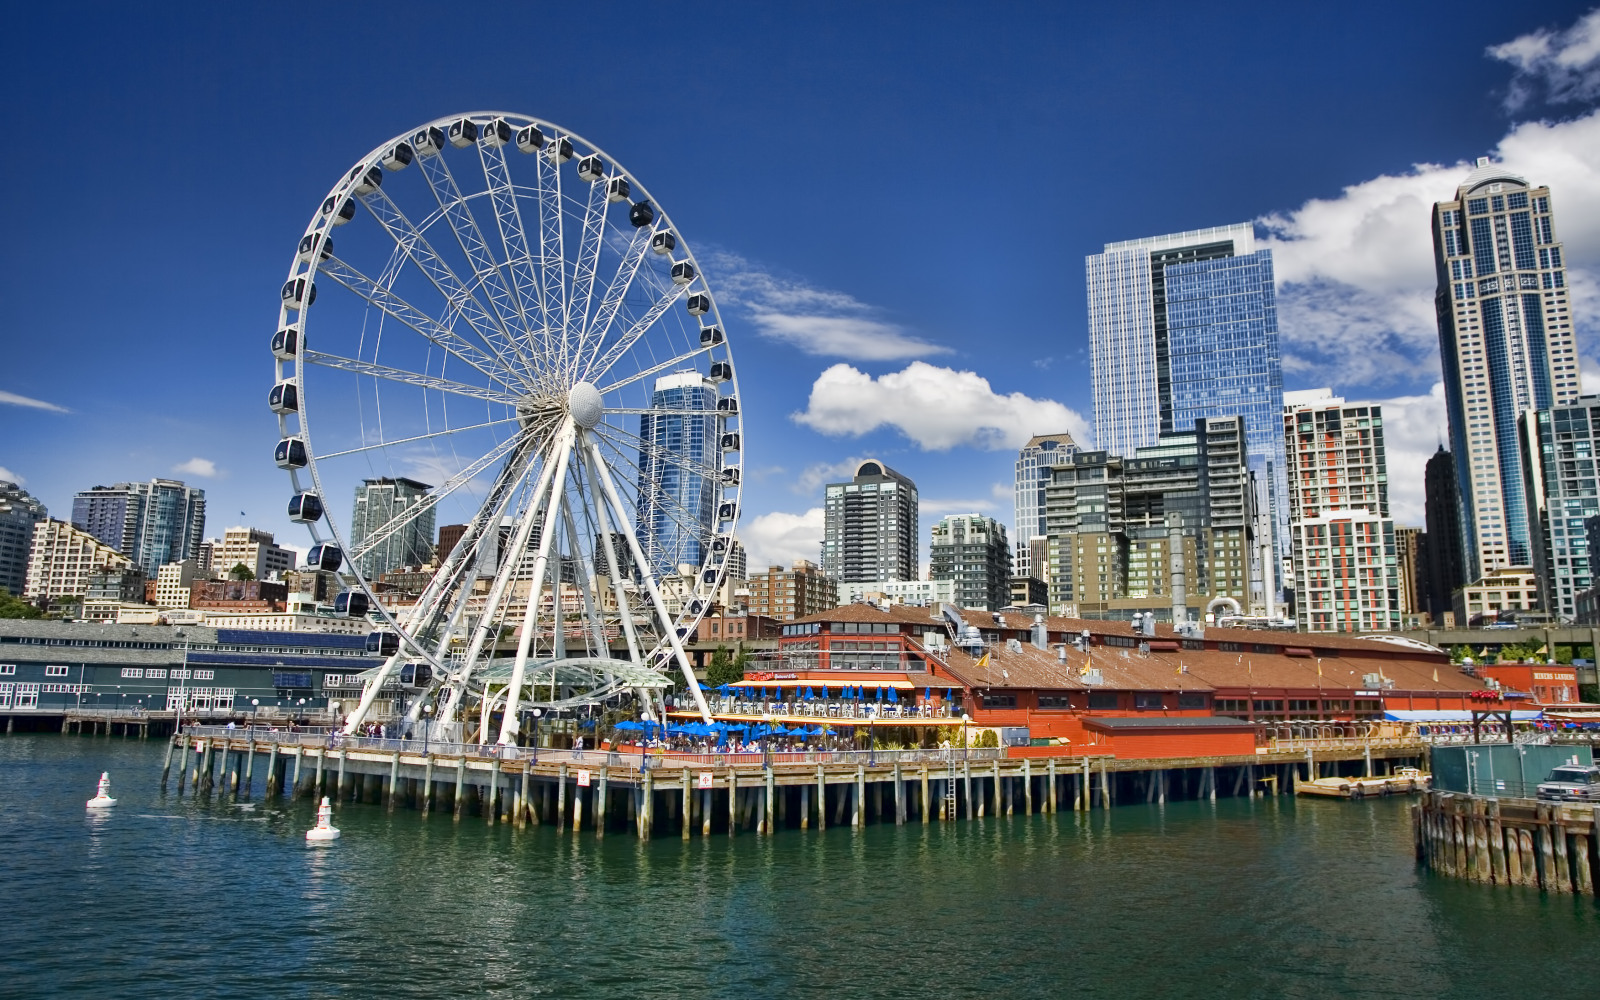 21 Seattle Ferris Wheel